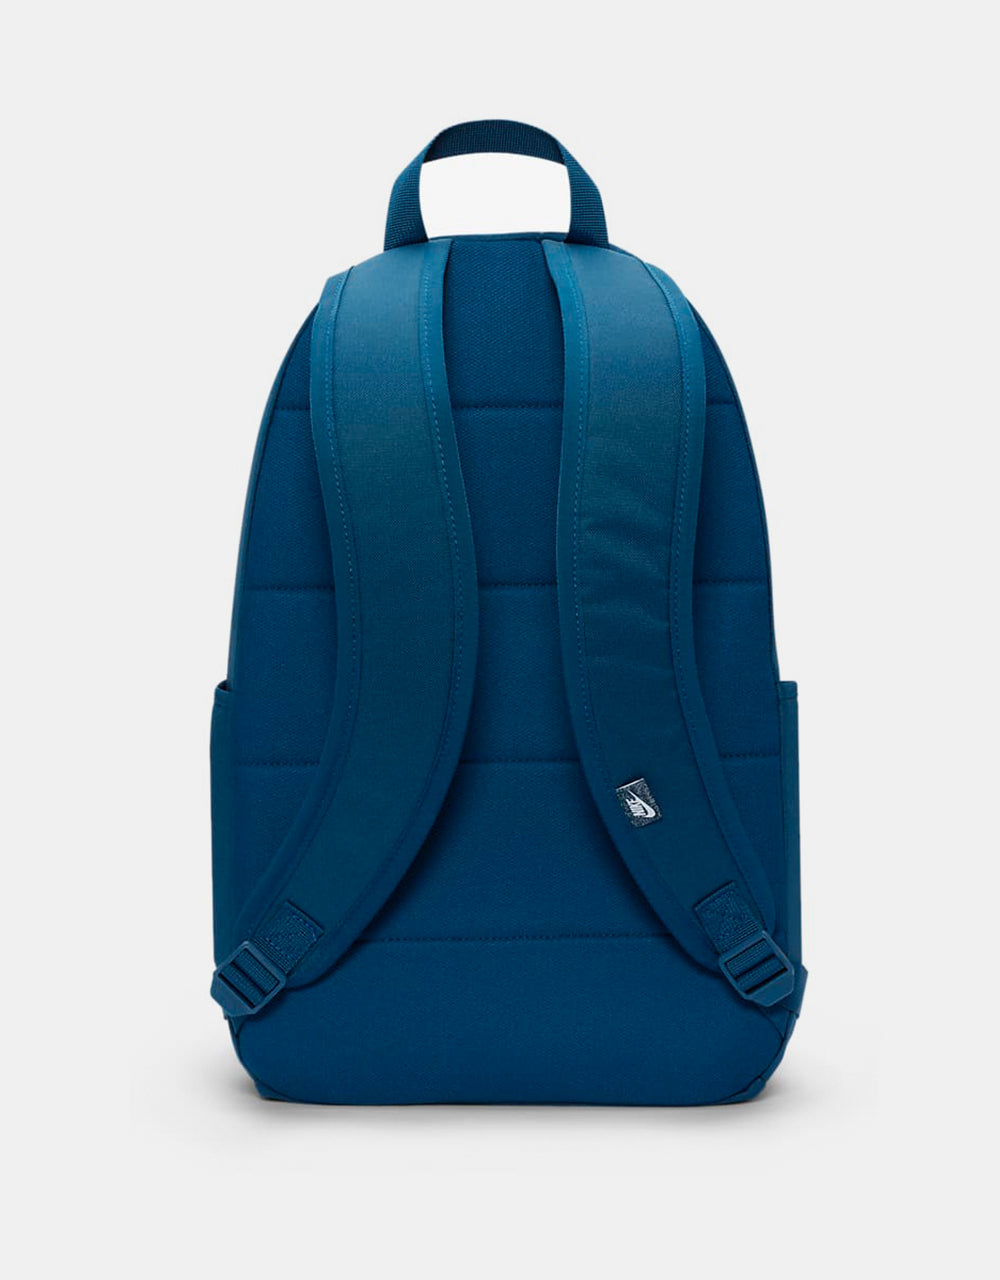 Nike Elemental Backpack - Valerian Blue/Valerian Blue/Light Menta